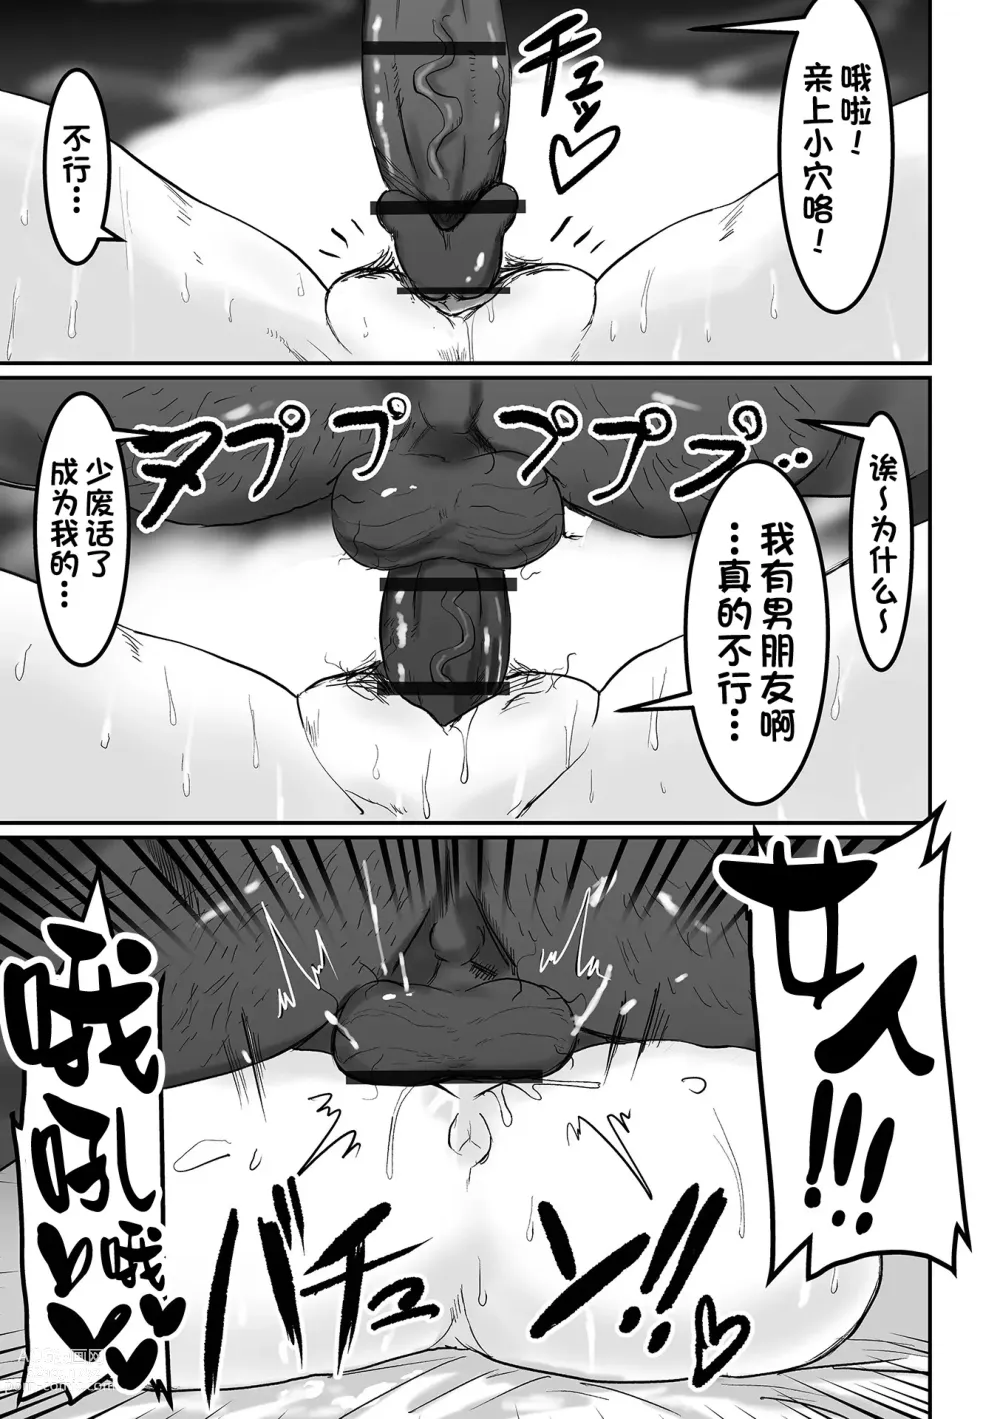 Page 11 of manga Uwaki na Twintail